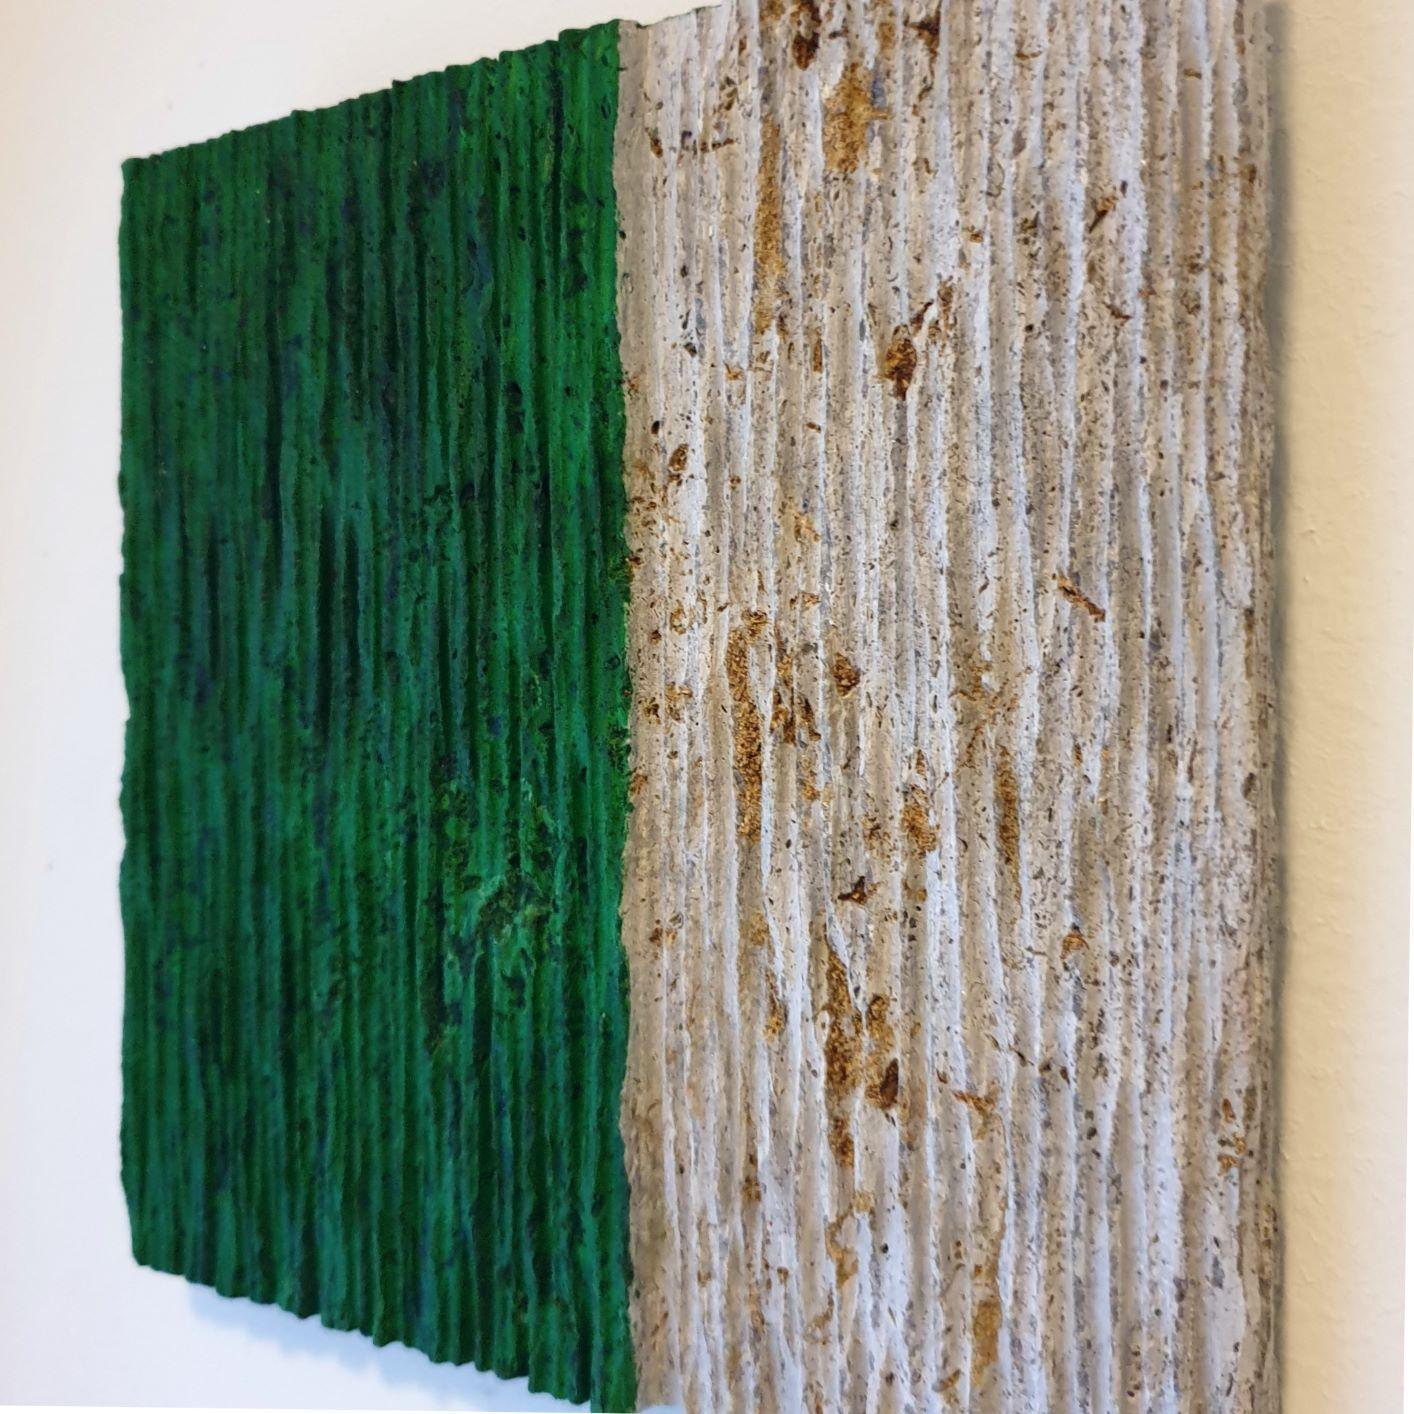 o.T. (Gr22VV) - green contemporary modern wall sculpture painting relief - Contemporary Sculpture by Dieter Kränzlein